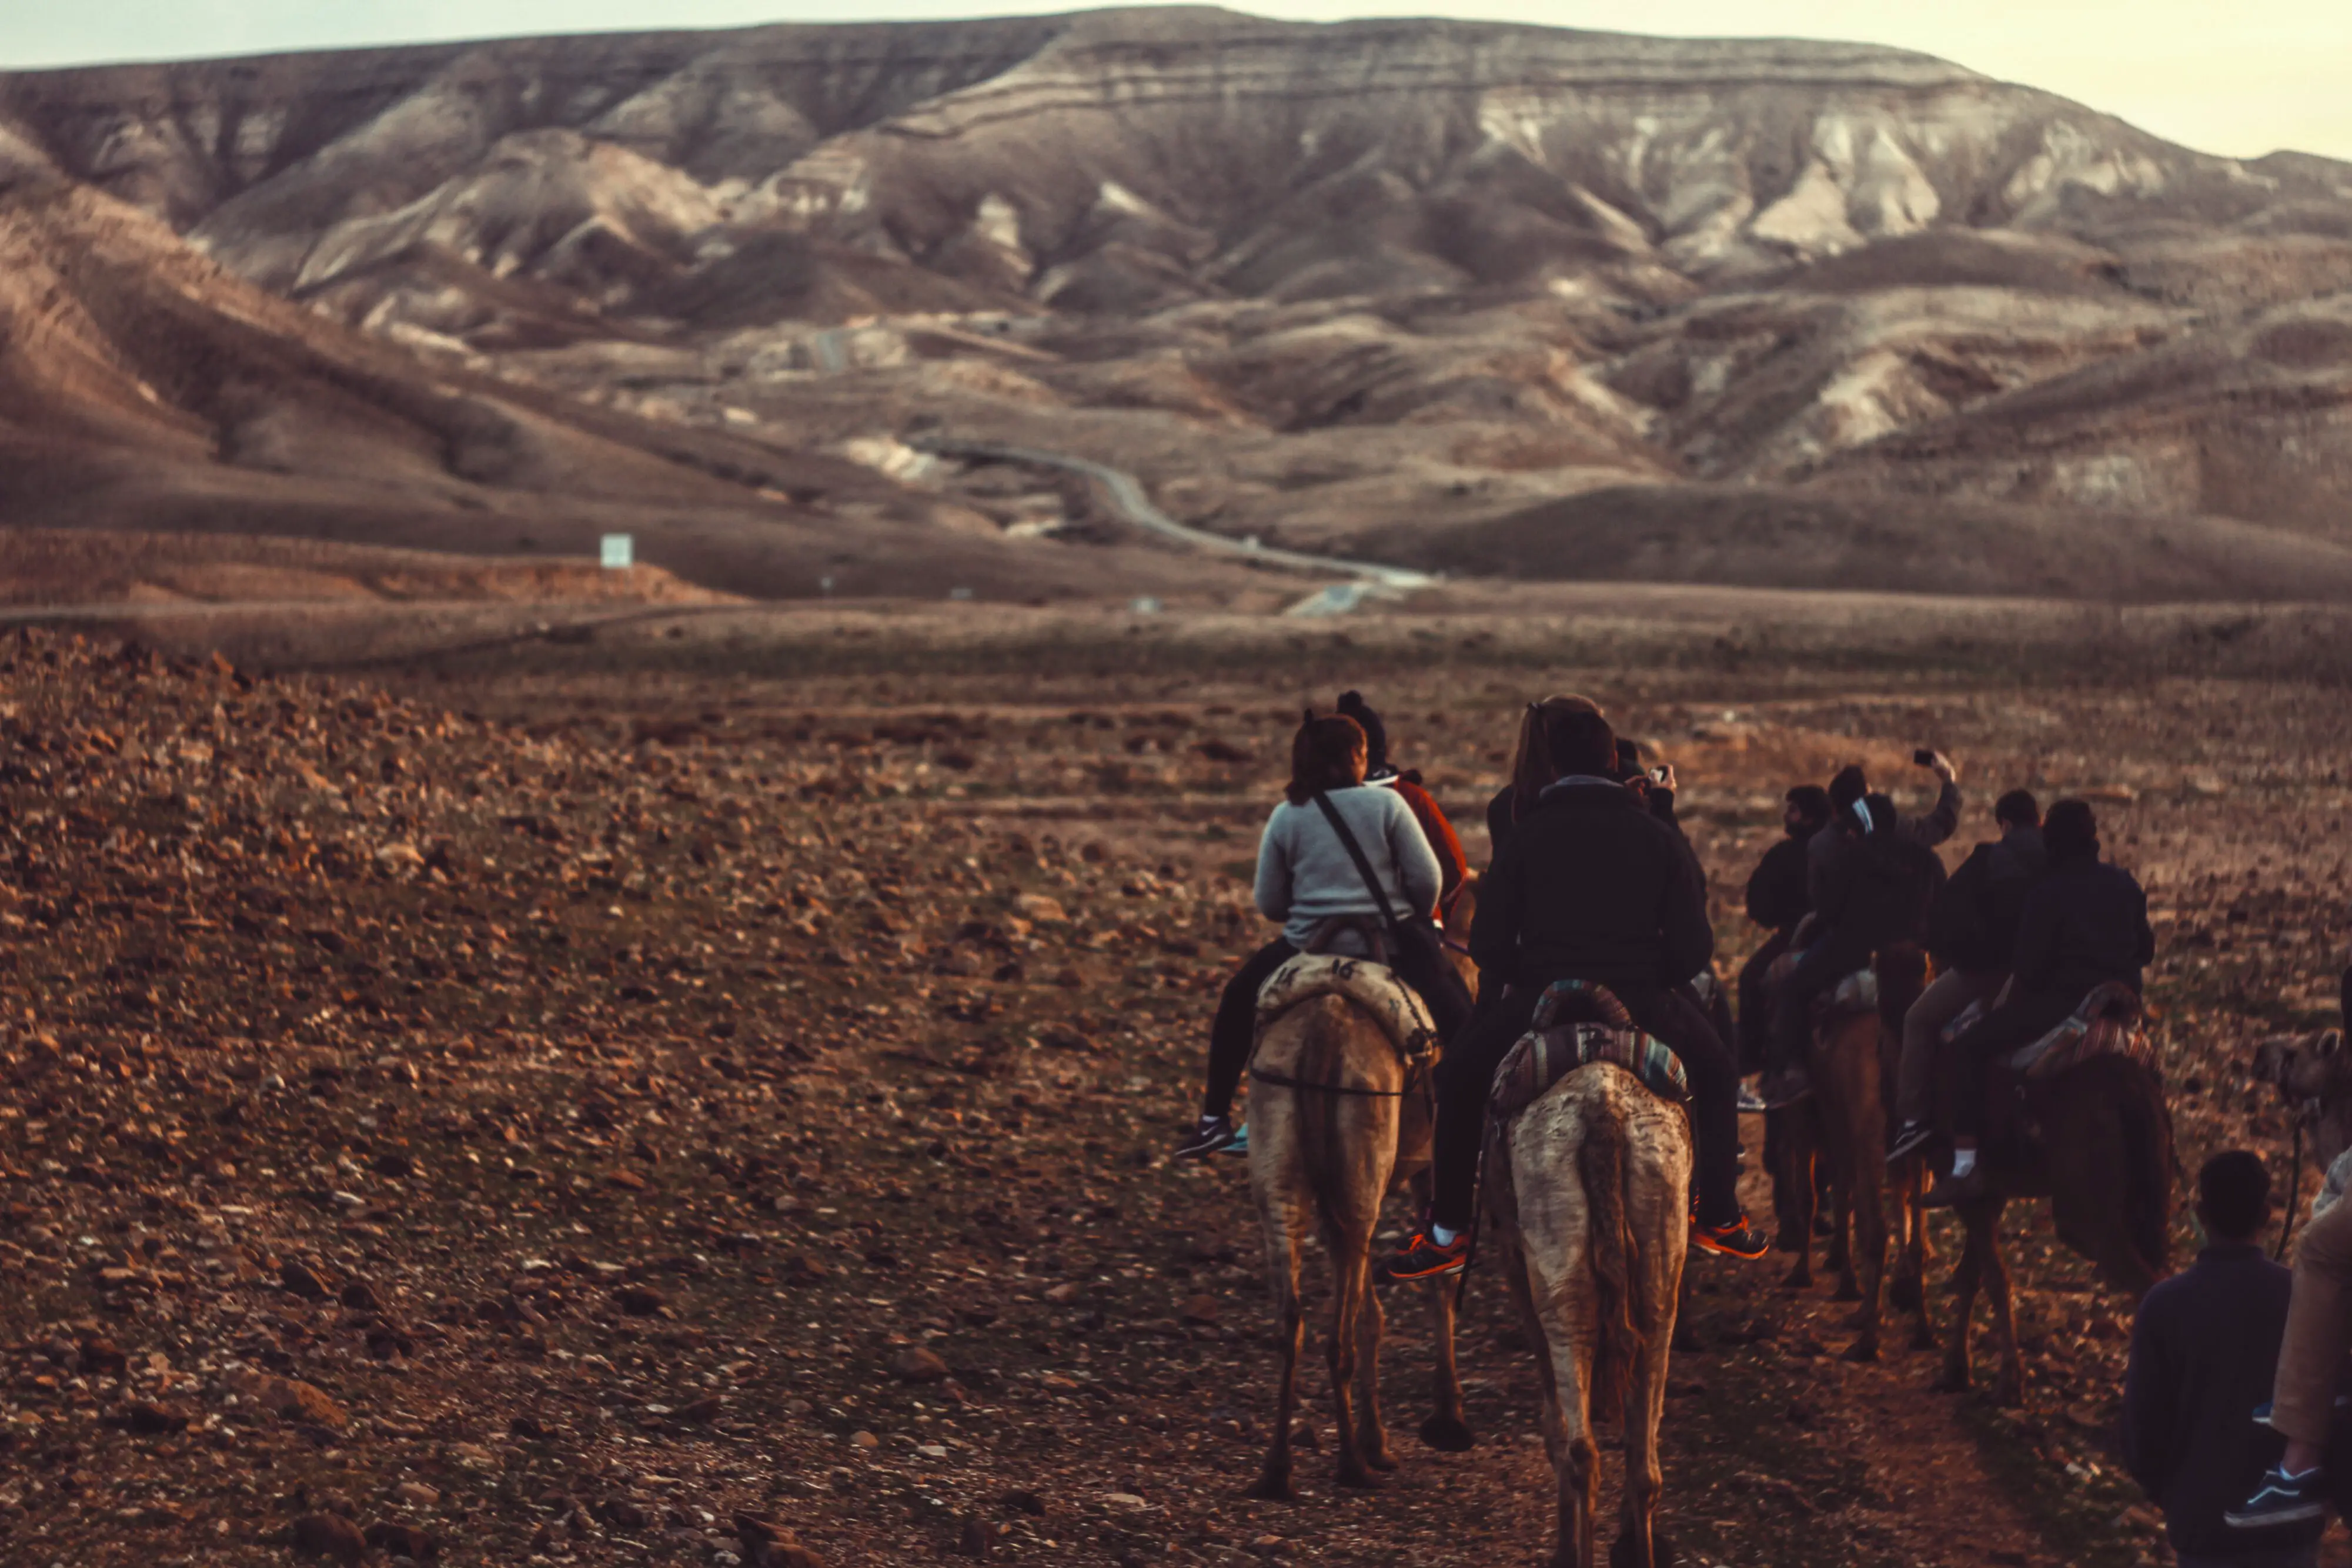 Desert on horseback